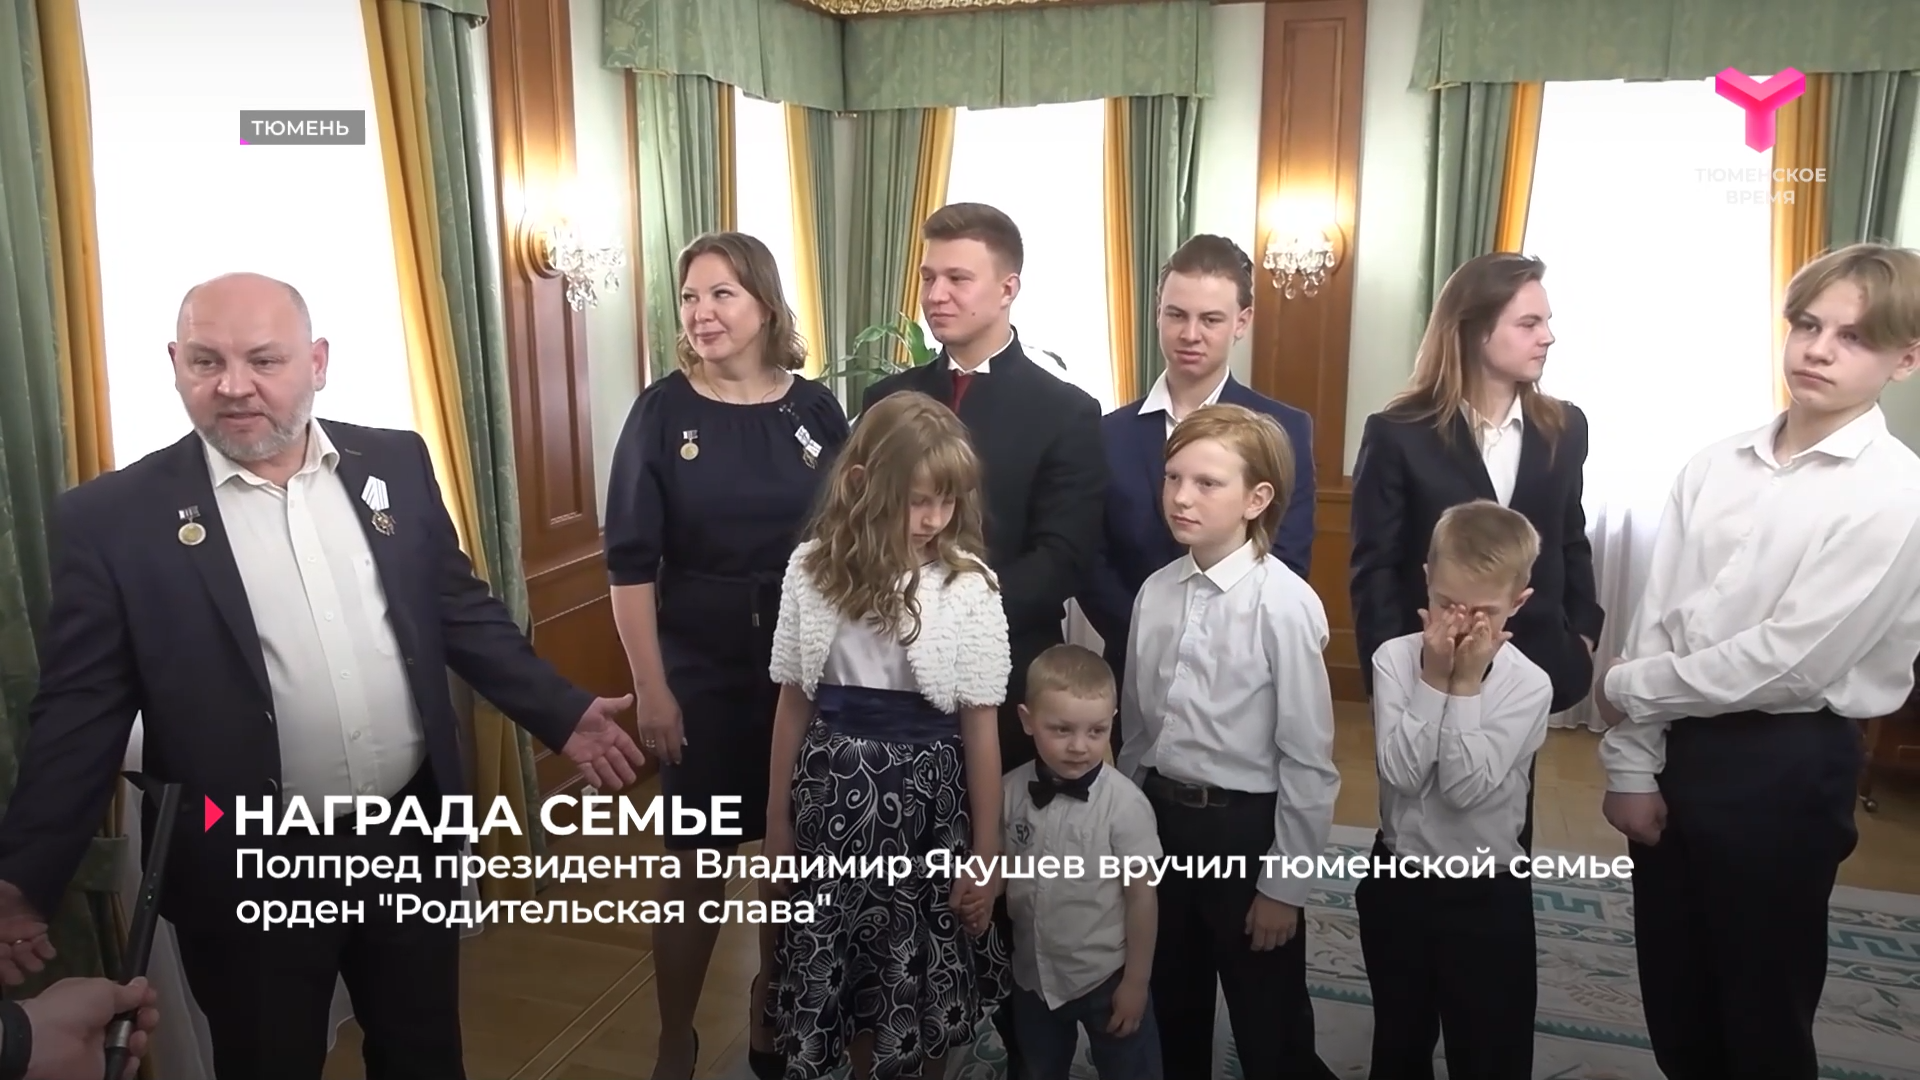 Полпред президента Владимир Якушев вручил тюменской семье орден "Родительская слава"